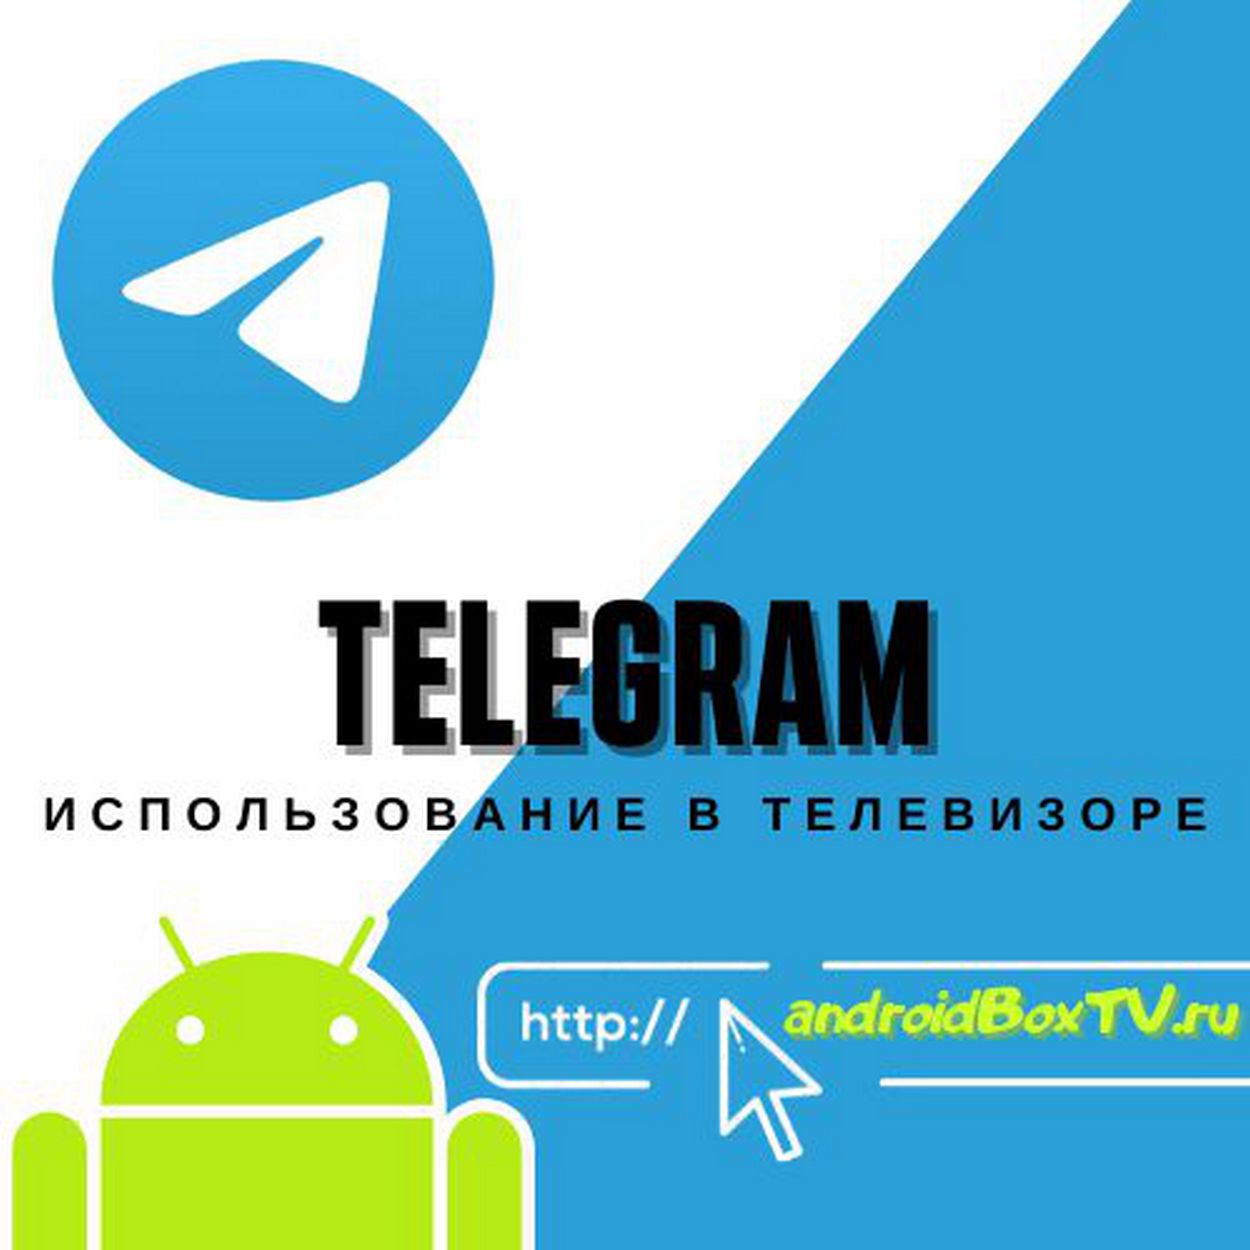 Программы андроид тв телеграмм (120) фото